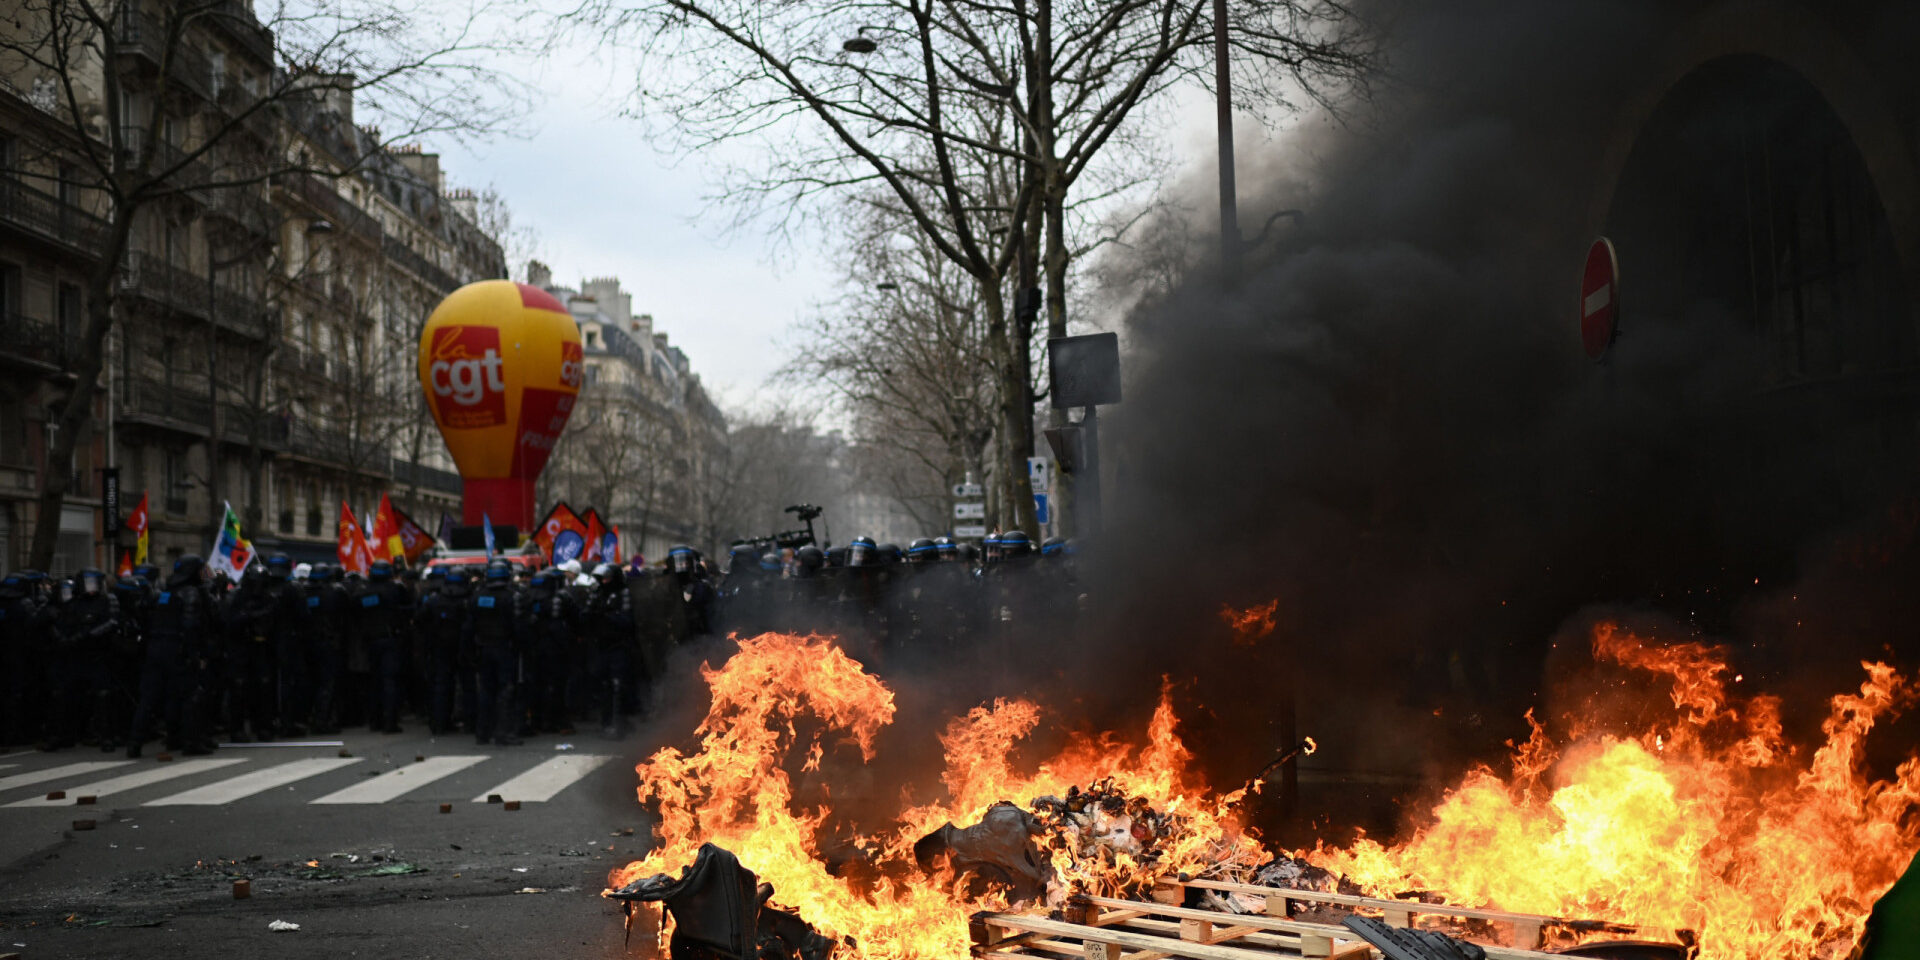 Das toneladas de lixo aos confrontos com a polícia: o que está a acontecer em Paris?